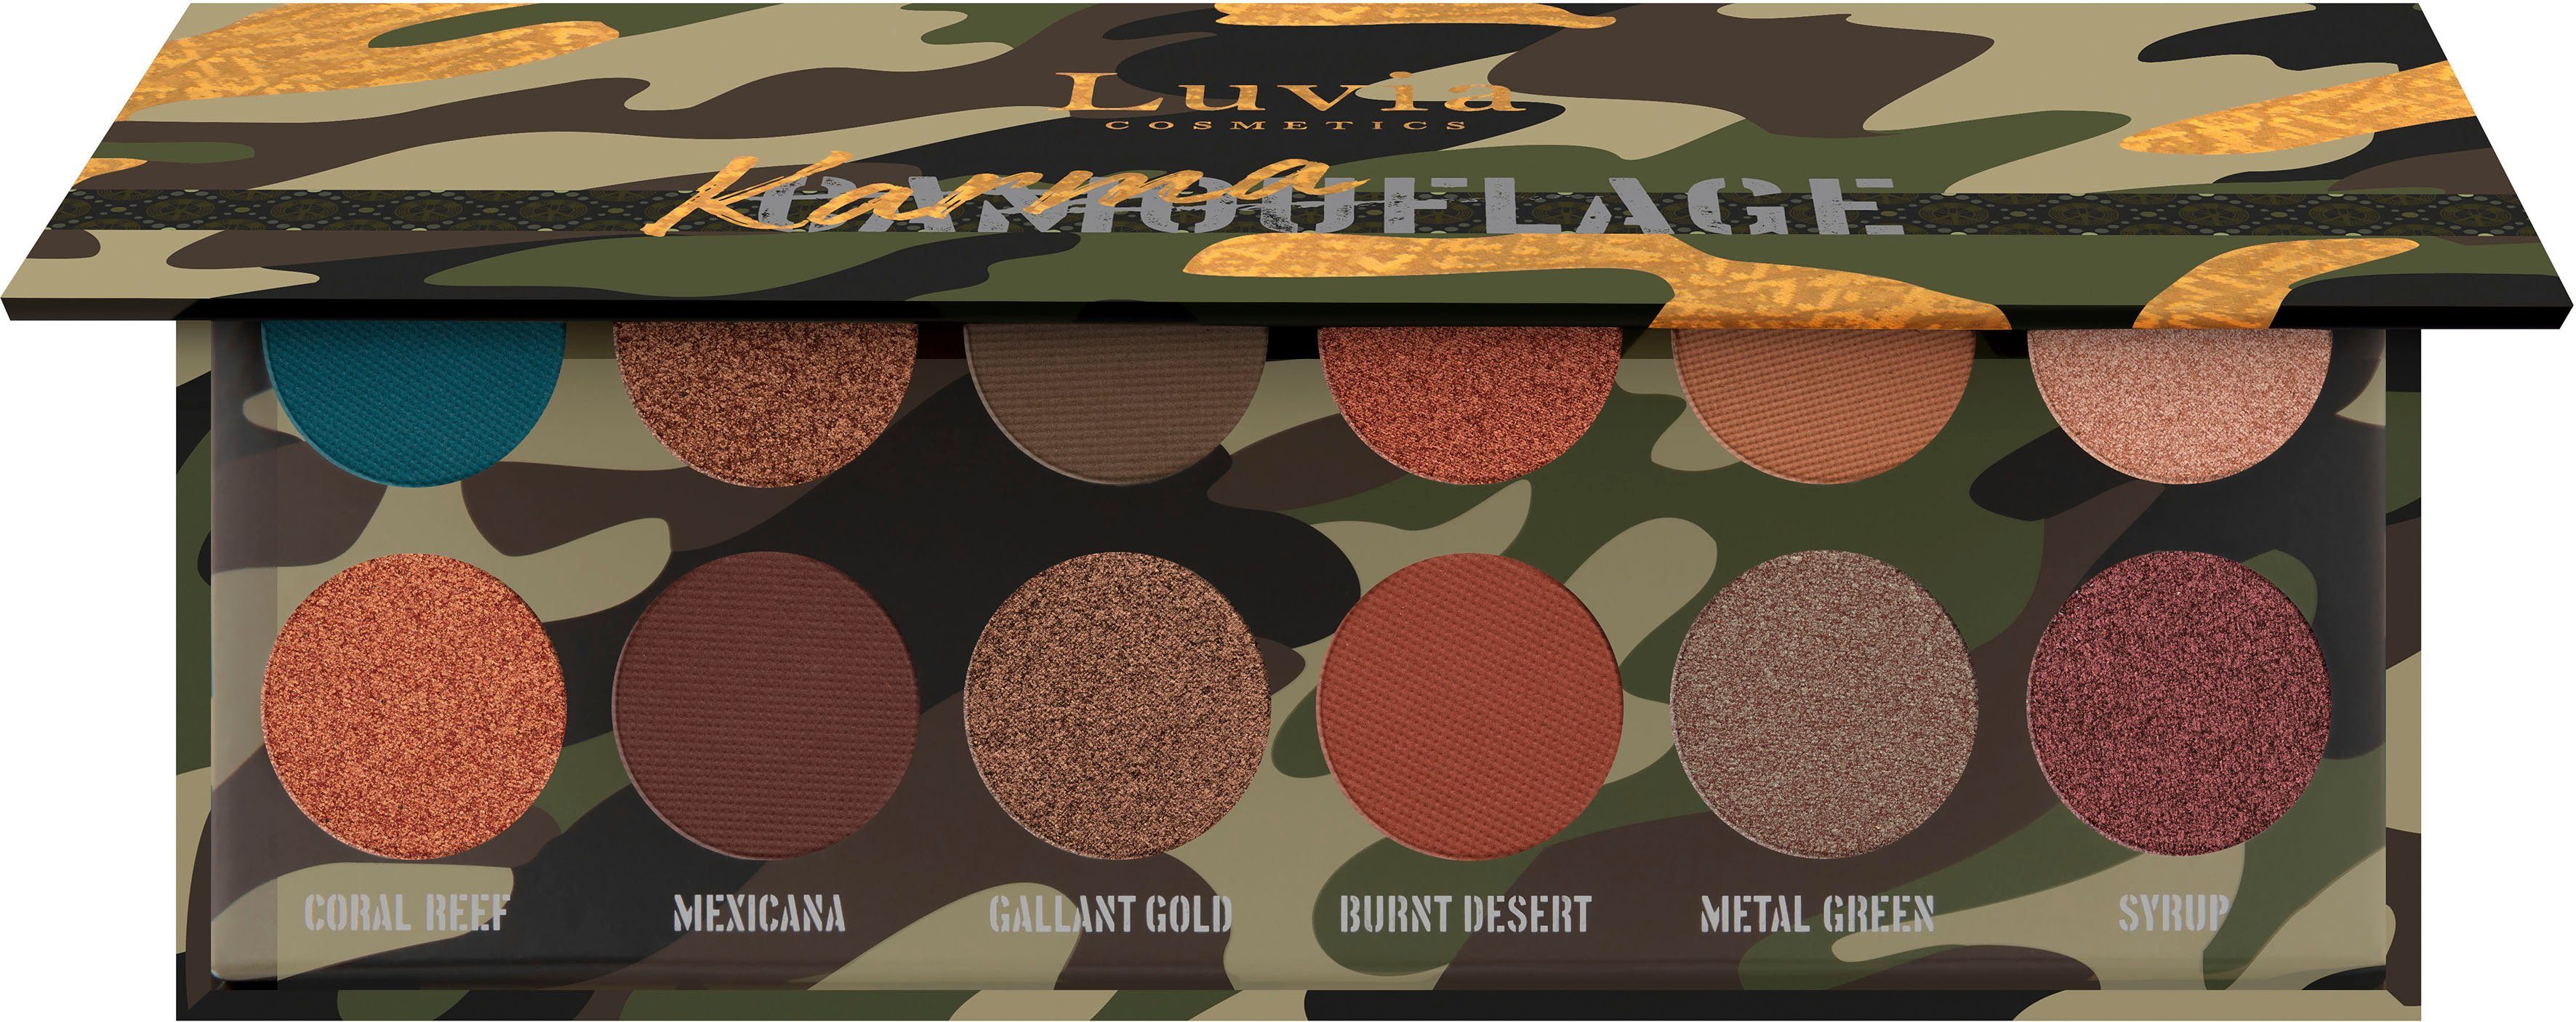 Luvia Cosmetics Lidschatten-Palette Karmaflage grün